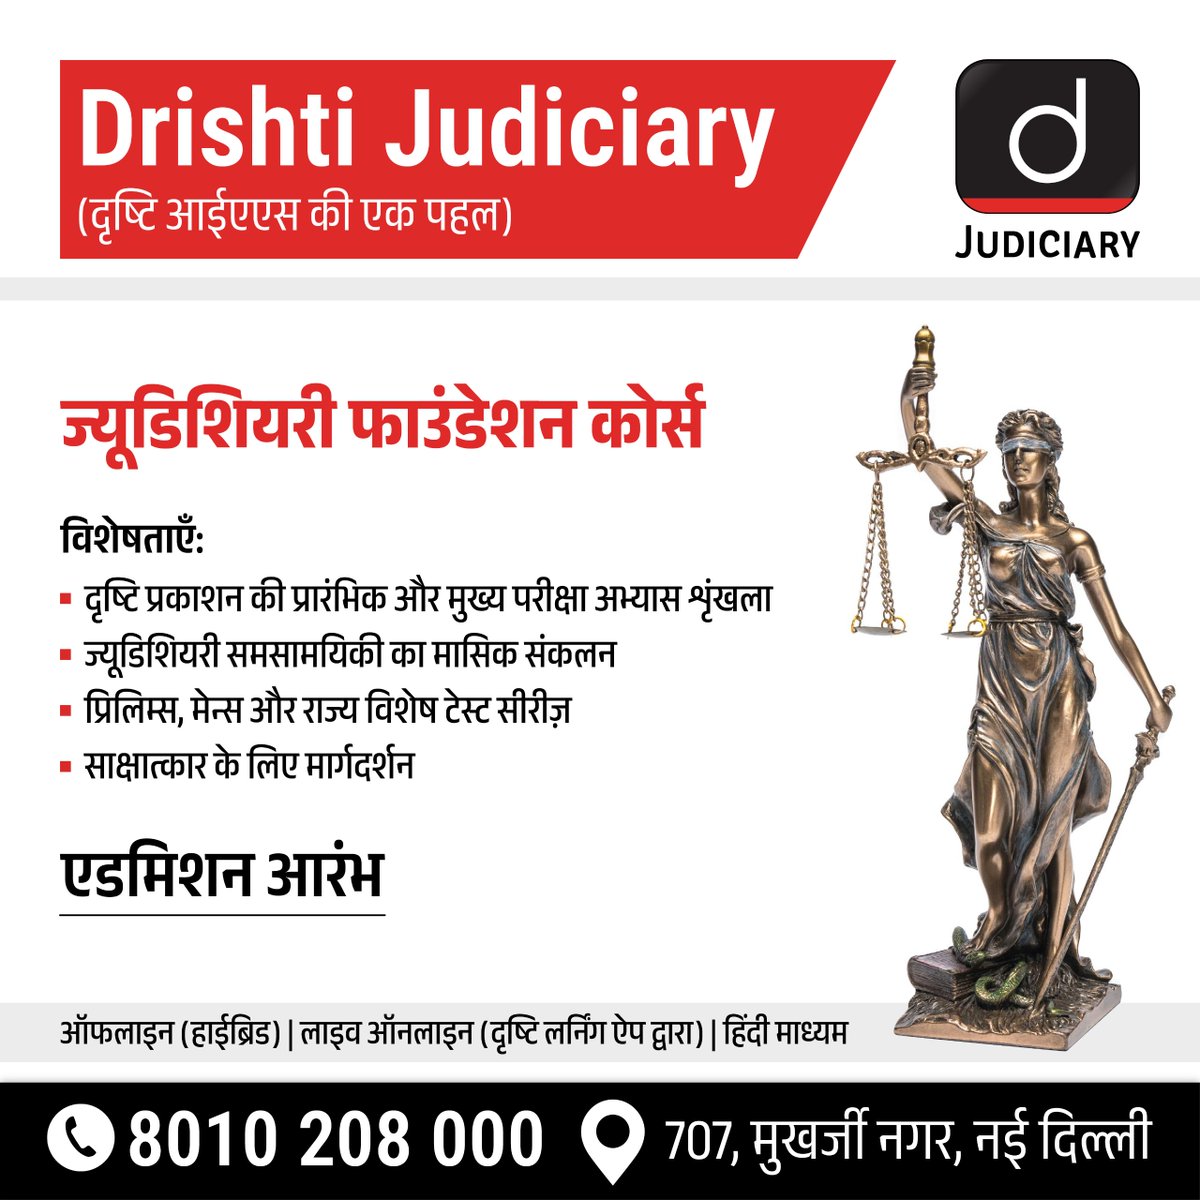 दृष्टि ज्यूडिशियरी फाउंडेशन कोर्स!
.
अपनी सीट बुक करने के लिये क्लिक करें: drishti.xyz/Registration-J…
.
विस्तृत जानकारी के लिये कॉल बैक फॉर्म भरें: drishti.xyz/Callback-Judic…

#JudicialServices #Foundation #Law #LawStudents #IndianJudiciary #LegalStudies #Constitution #DrishtiJudiciary